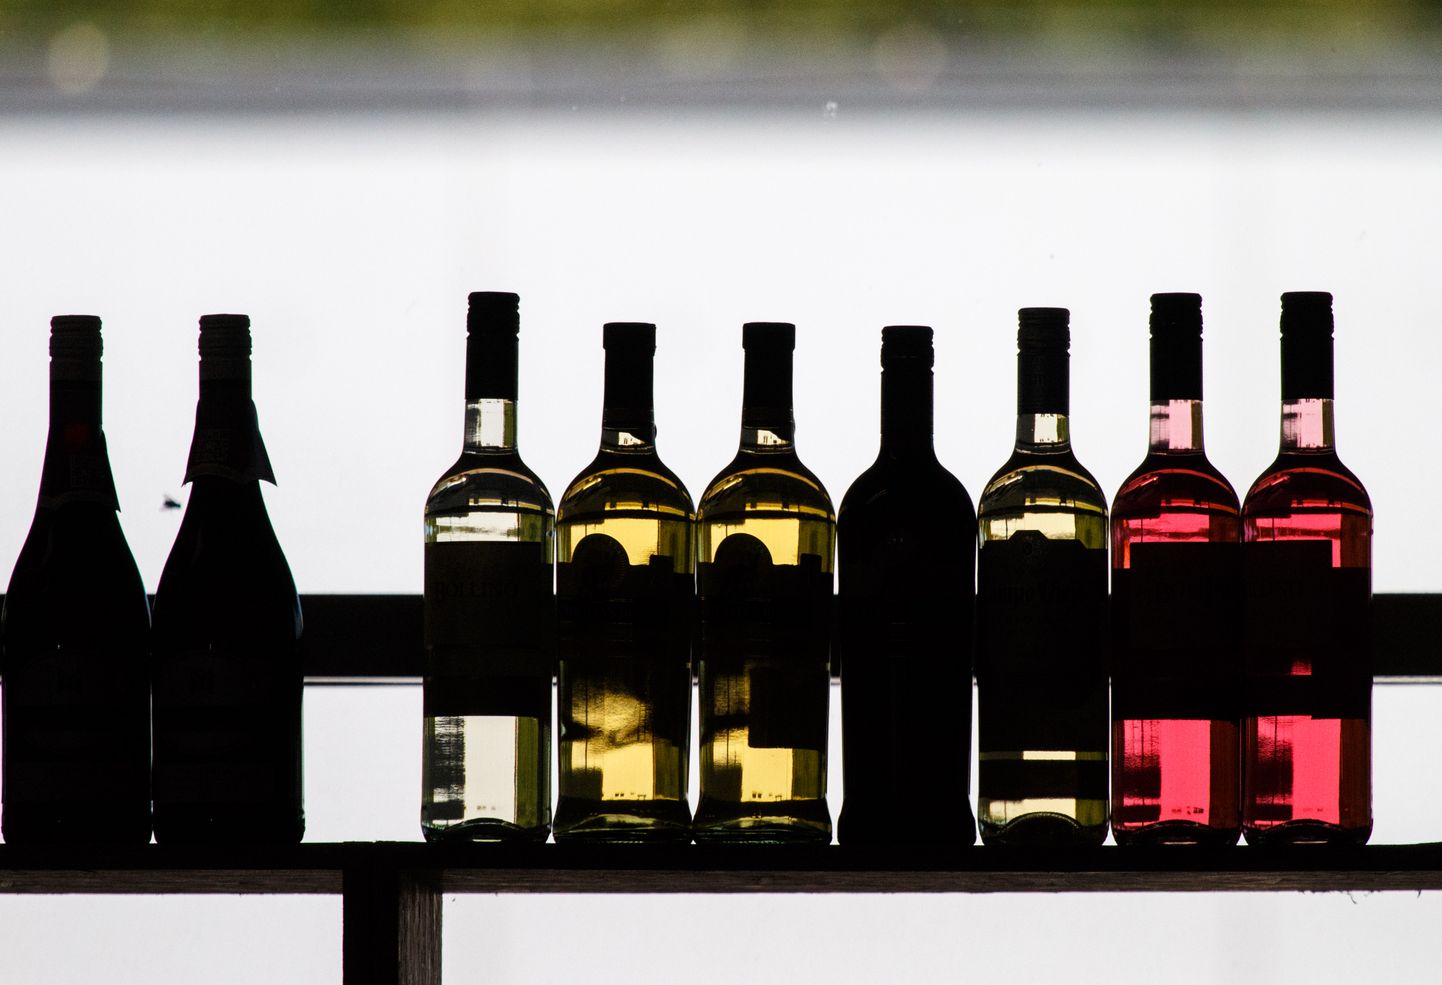 Juunis kasvas Soome alkomonopolis roosa veini müük pea poole võrra.